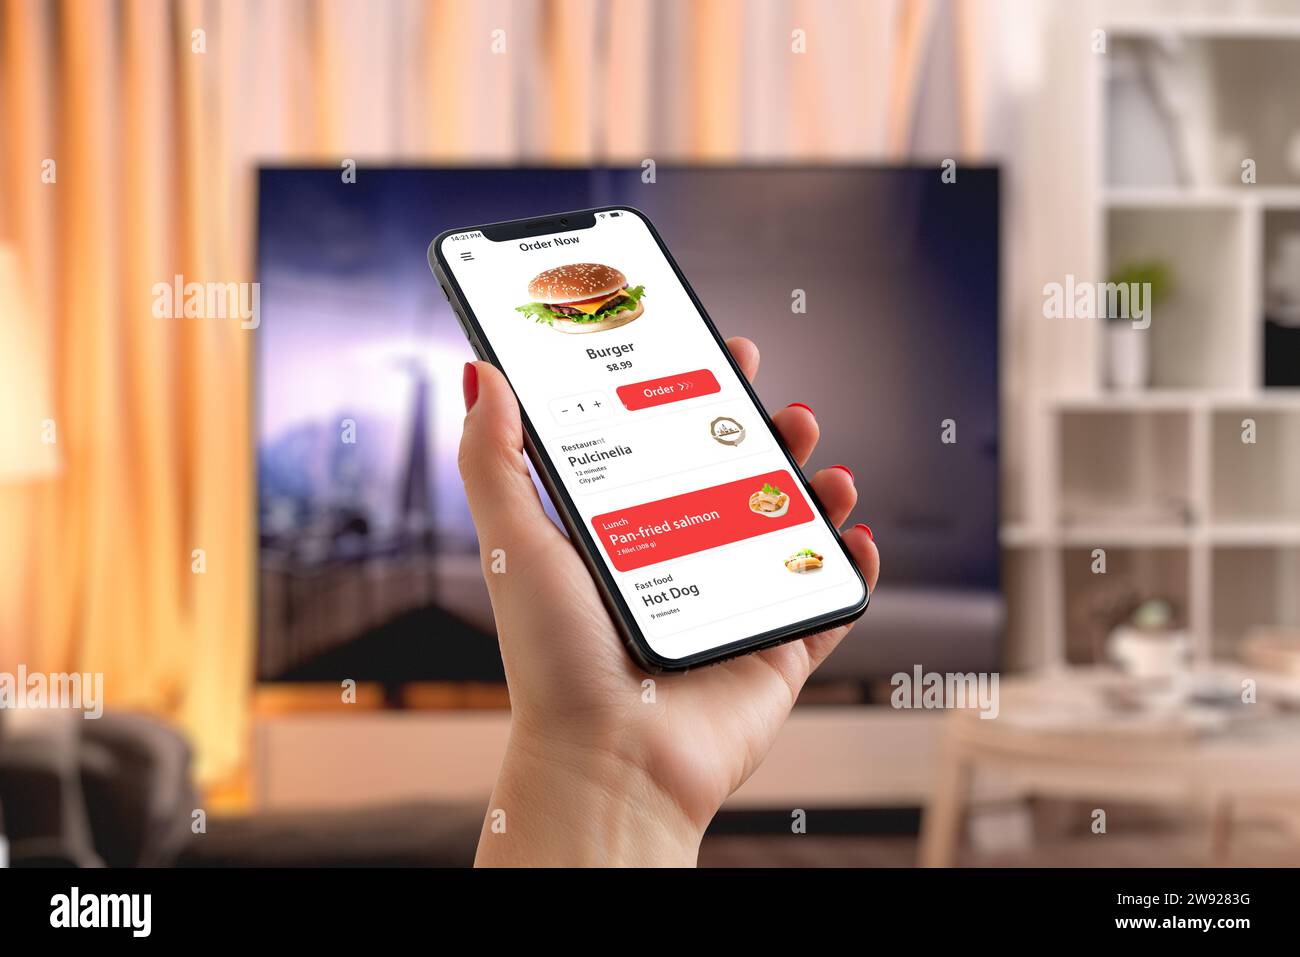 L'uomo ordina un hamburger tramite smartphone nel soggiorno, creando un mix perfetto di praticità tecnologica e piacere nel fast food davanti al televisore Foto Stock